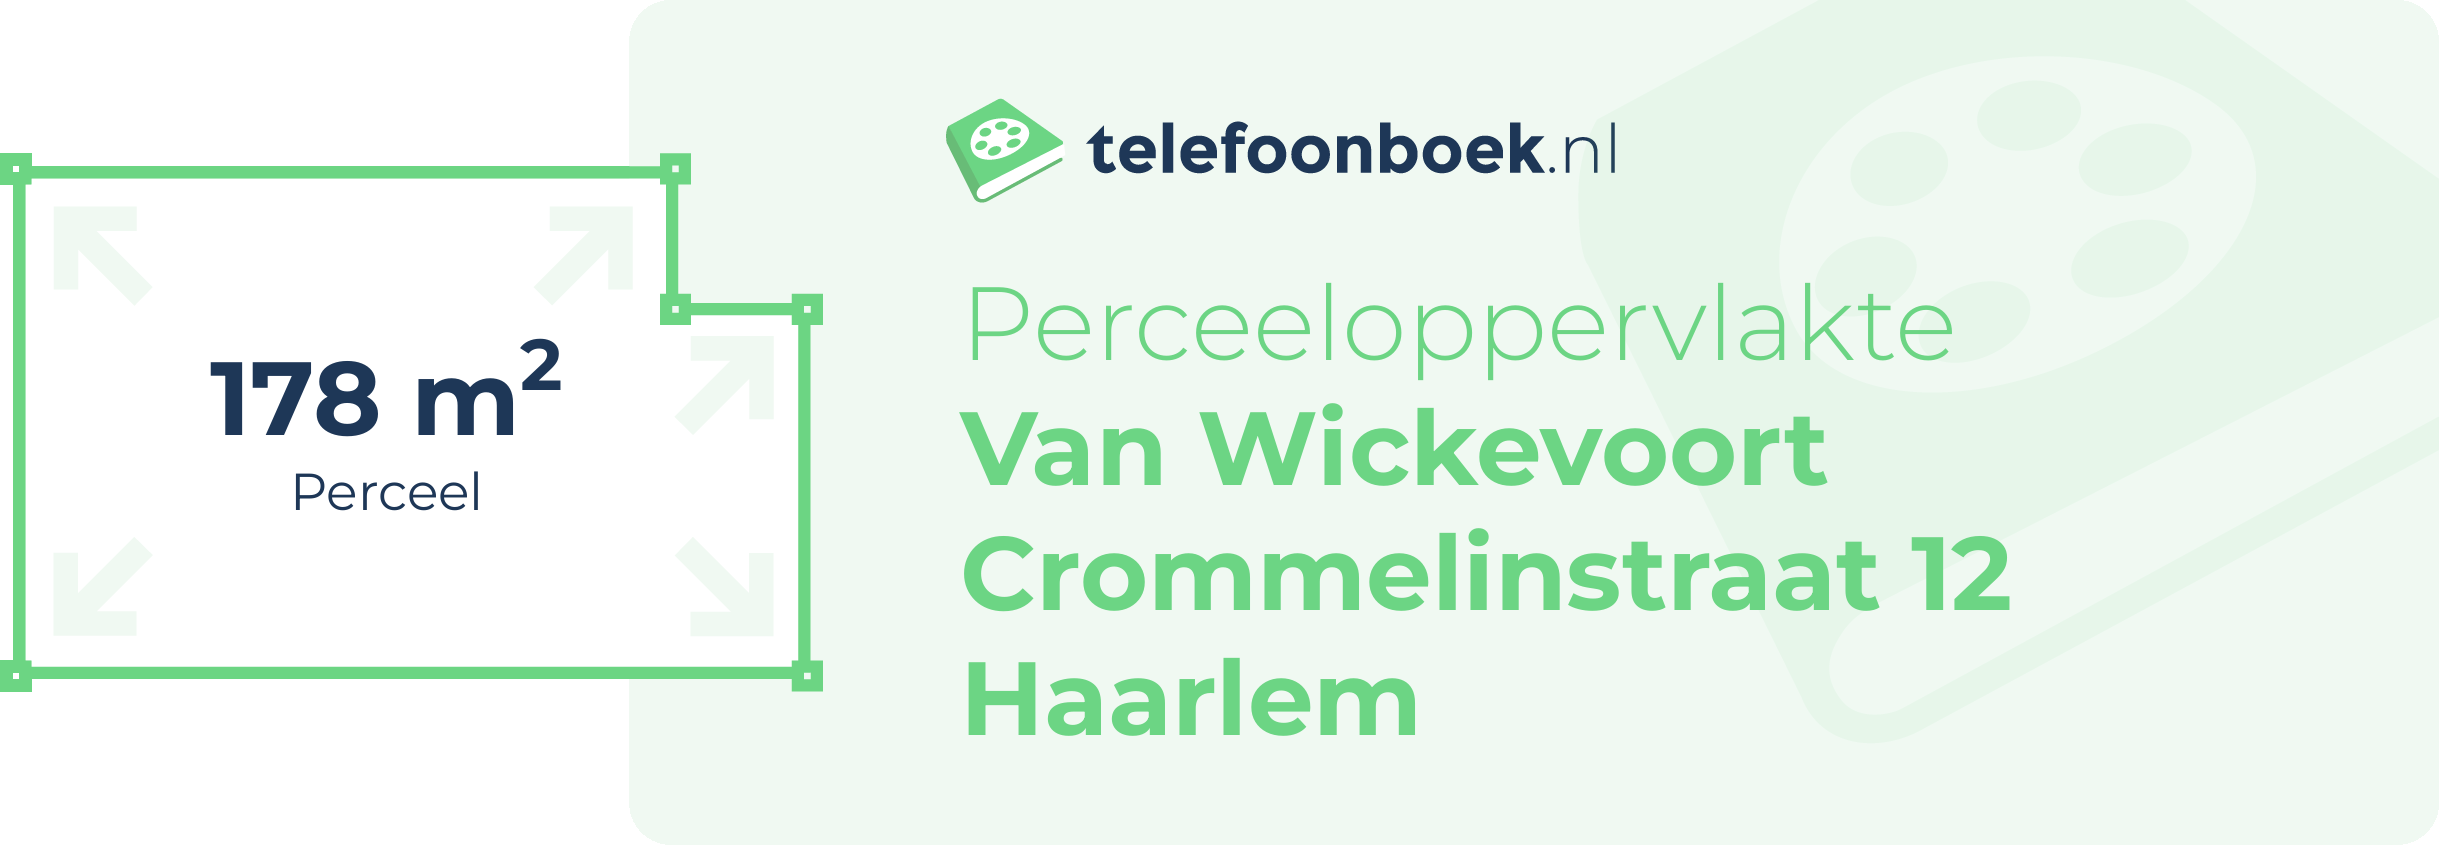 Perceeloppervlakte Van Wickevoort Crommelinstraat 12 Haarlem